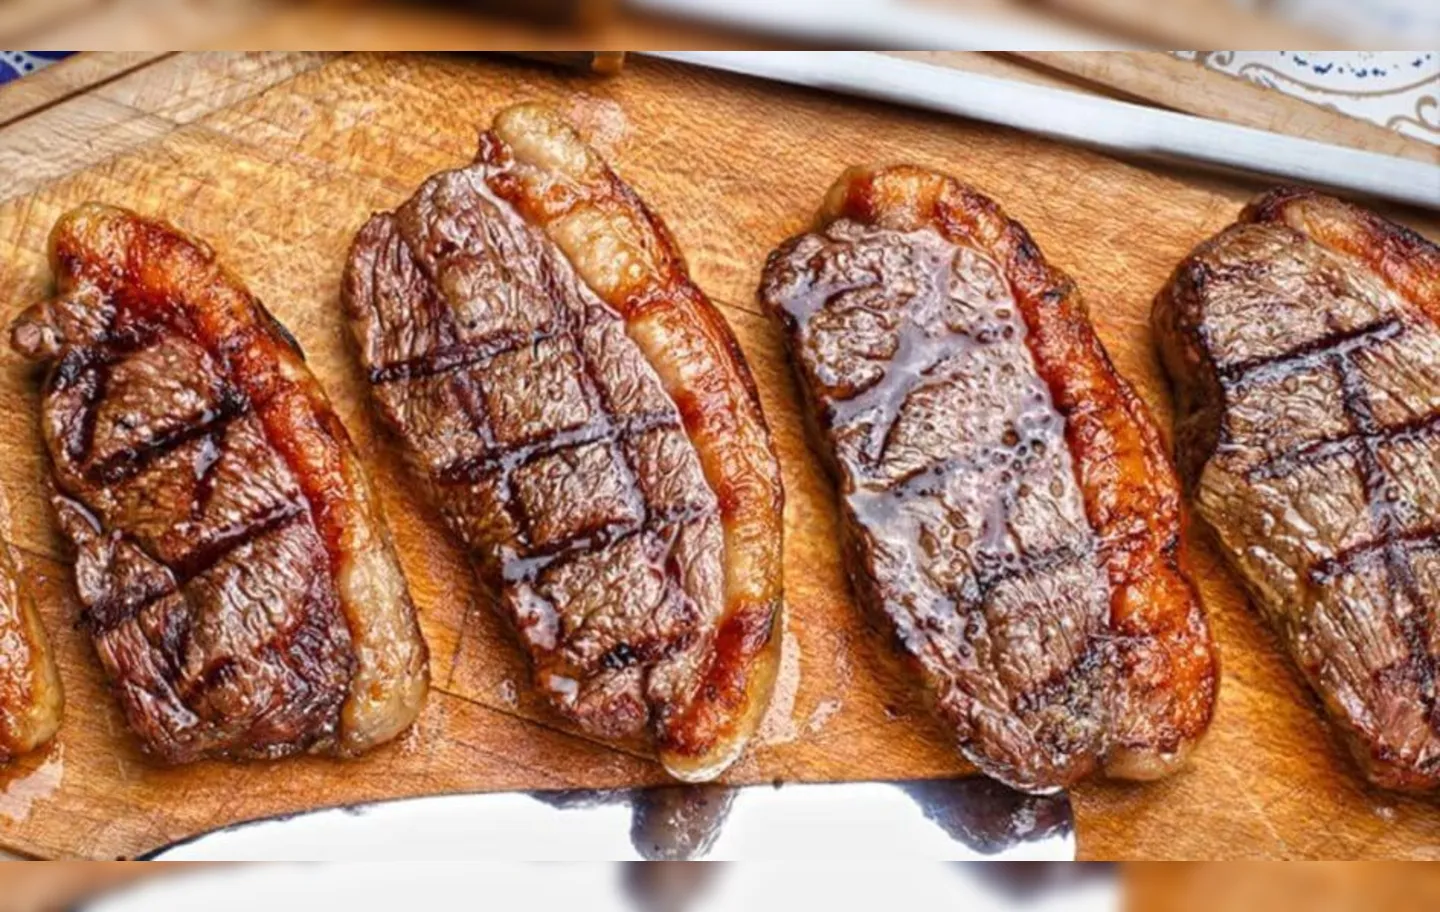 O preço de uma das carnes mais valorizadas foi uma das pautas debatidas pelo presidente nas eleições de 2022